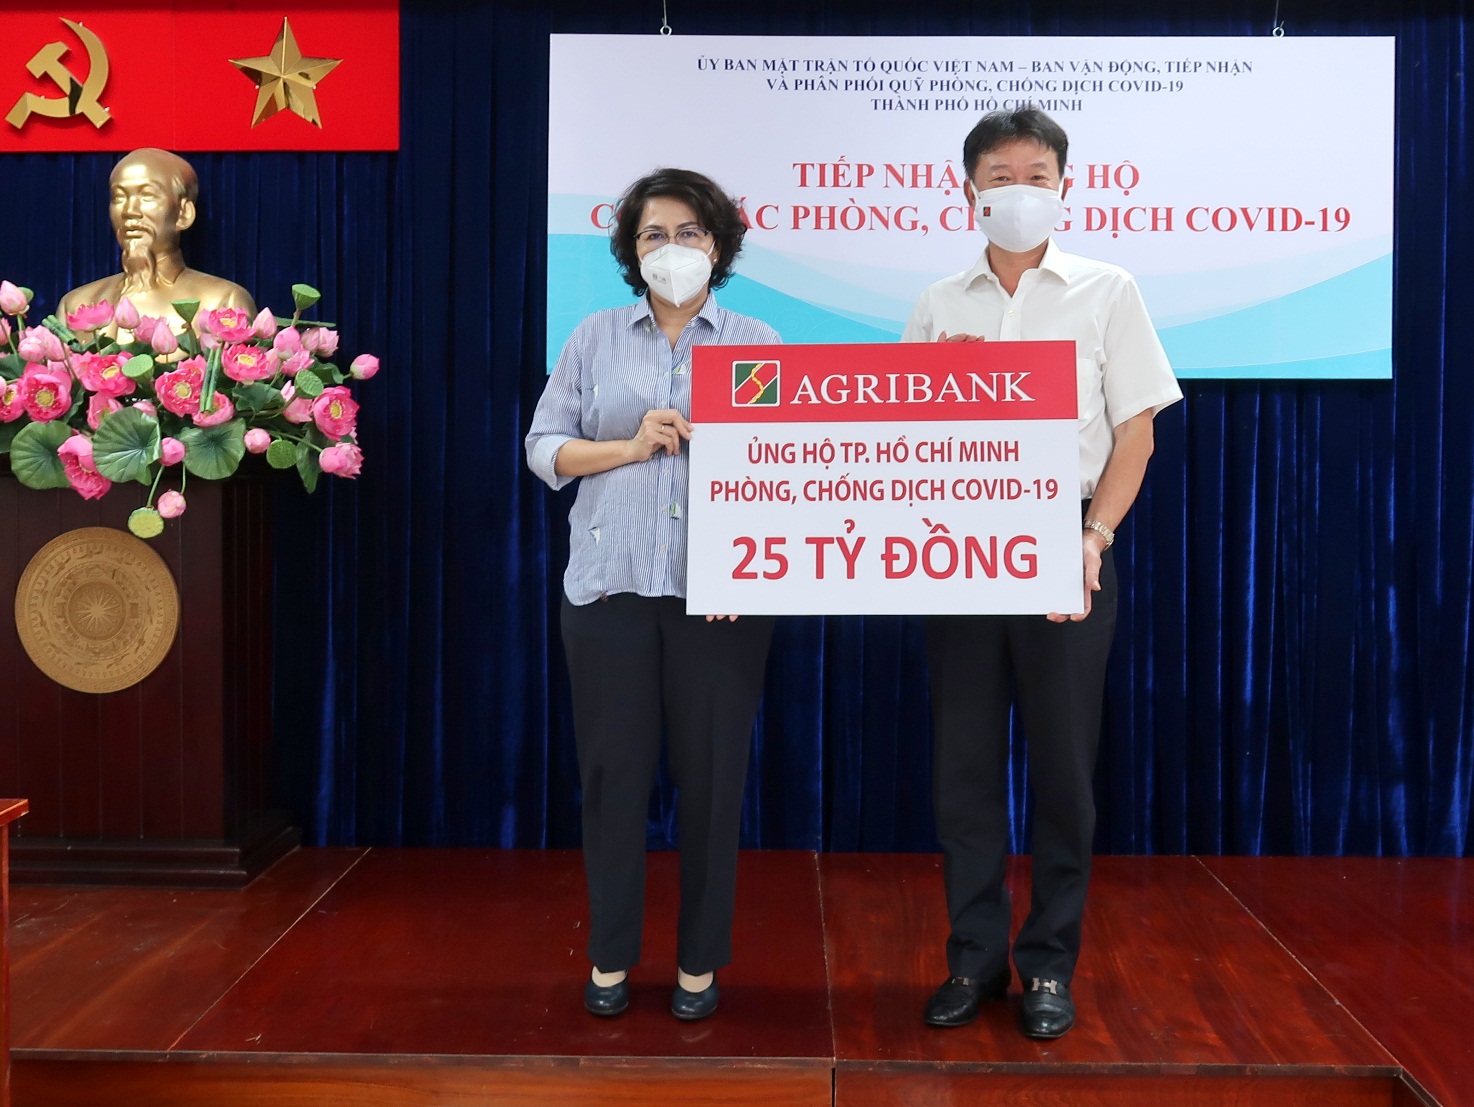 Agribank ủng hộ TP. Hồ Chí Minh 25 tỷ đồng phòng, chống dịch Covid-19 - Ảnh 1.